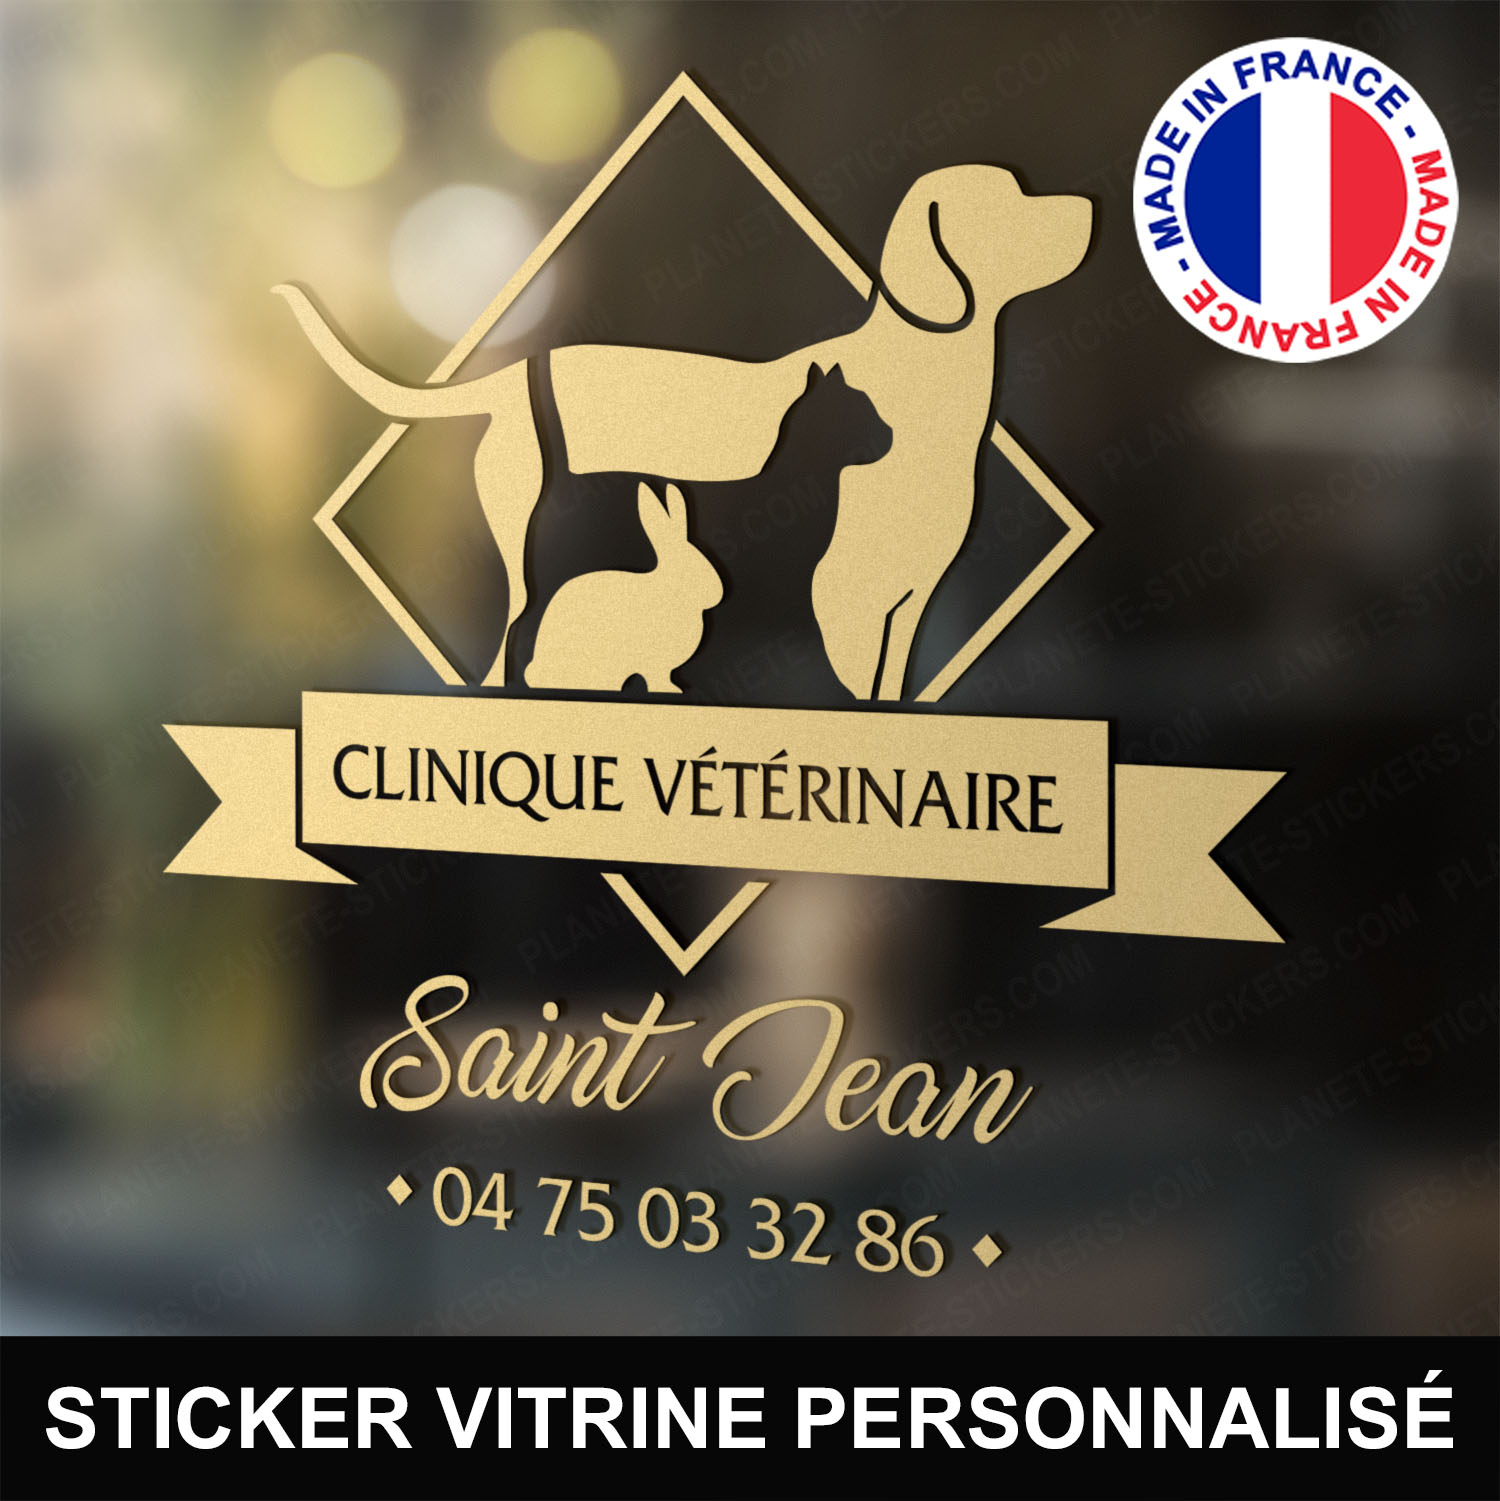 ref7veterinairevitrine-stickers-clinique-vétérinaire-vitrine-sticker-personnalisé-autocollant-pro-veterinaire-professionnel